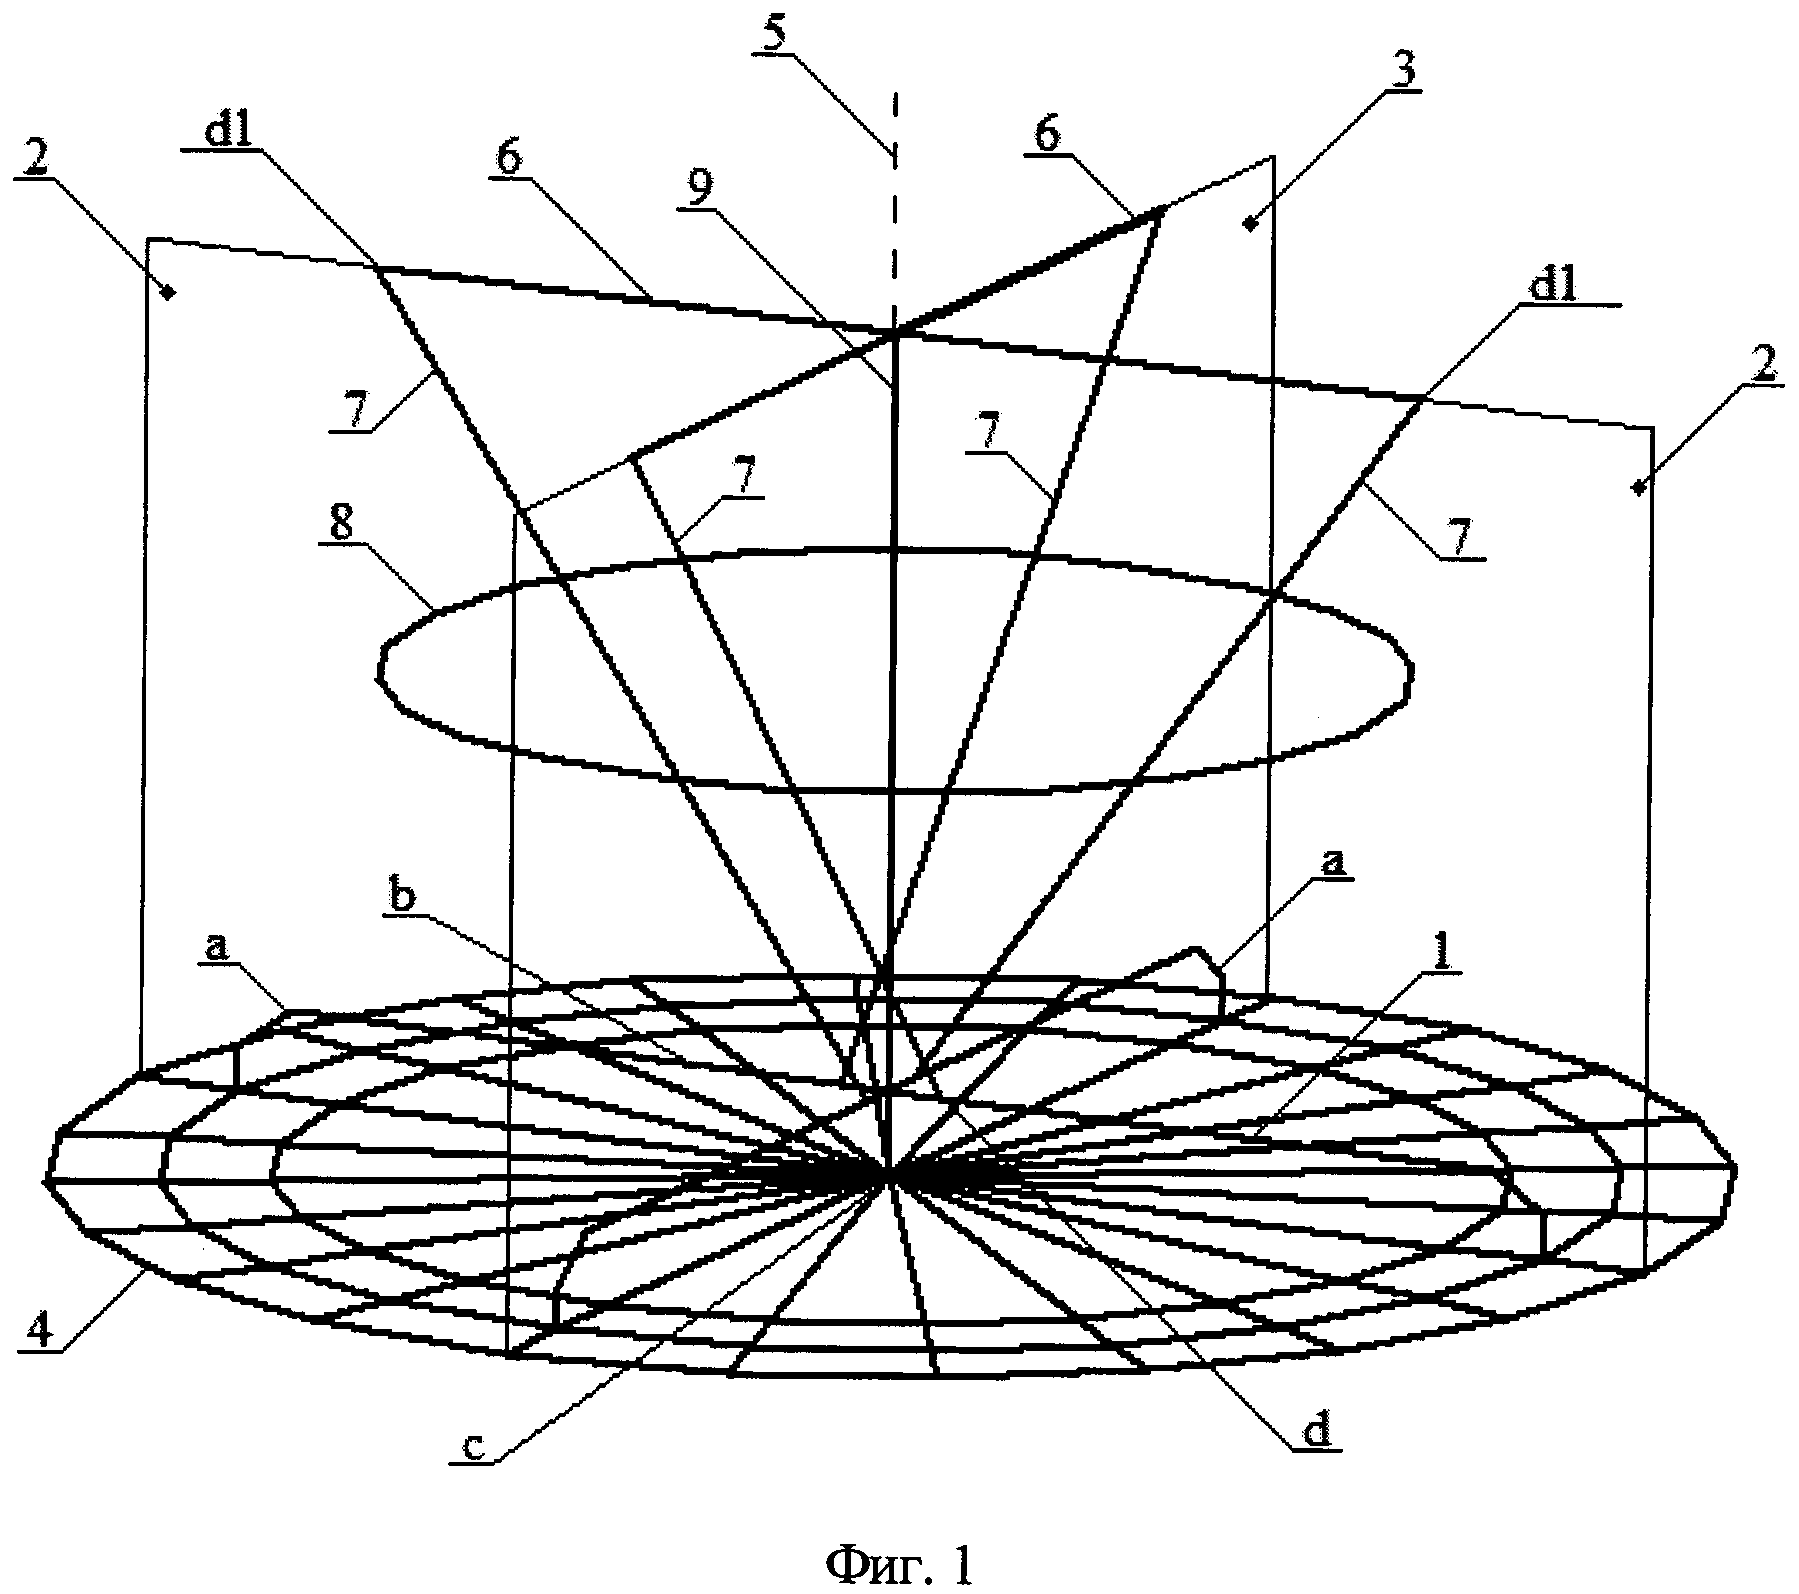 Треугольно-дуговая антенна круговой поляризации Милкина-Калитёнкова